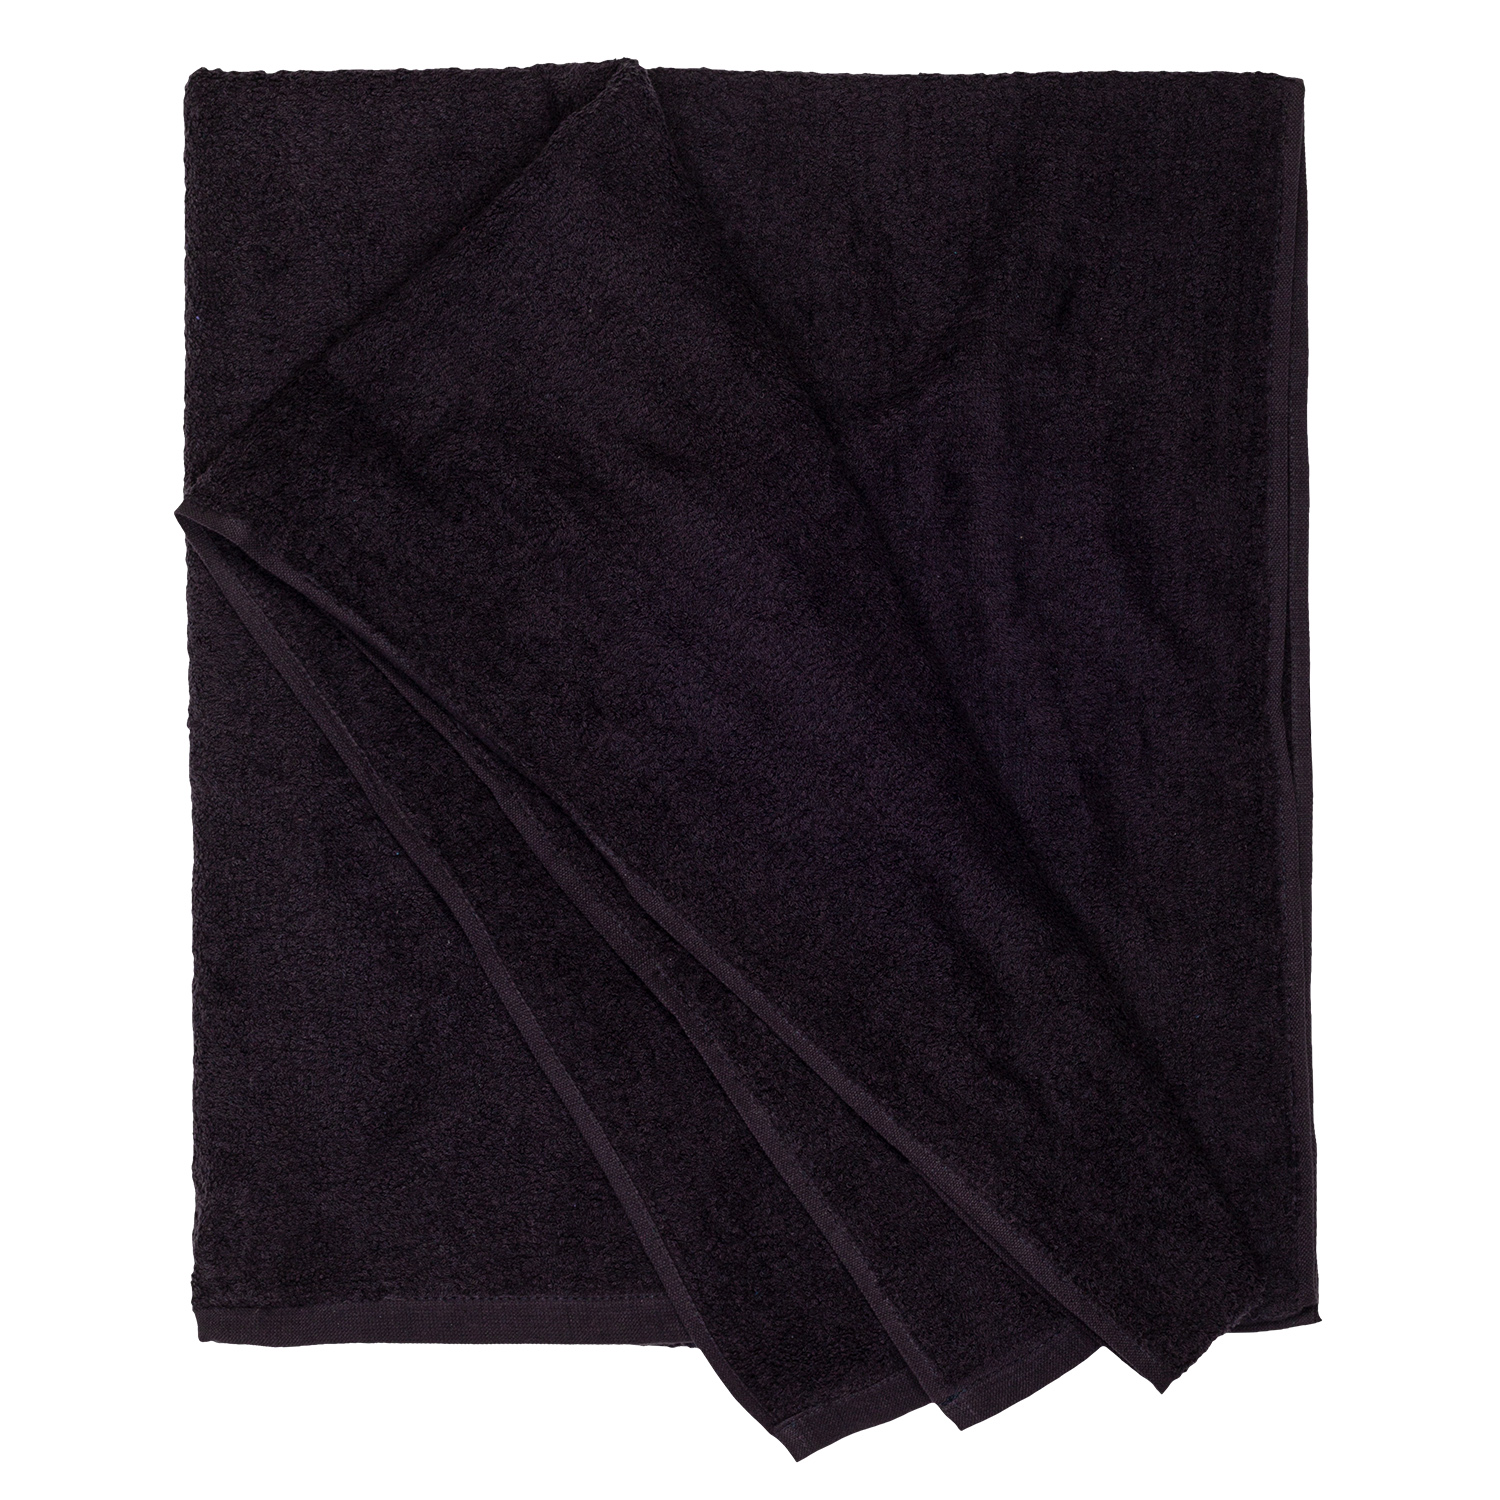 Bath towel series Helsinki in black by Adamo in large sizes 100x220 cm or 155x220 cm